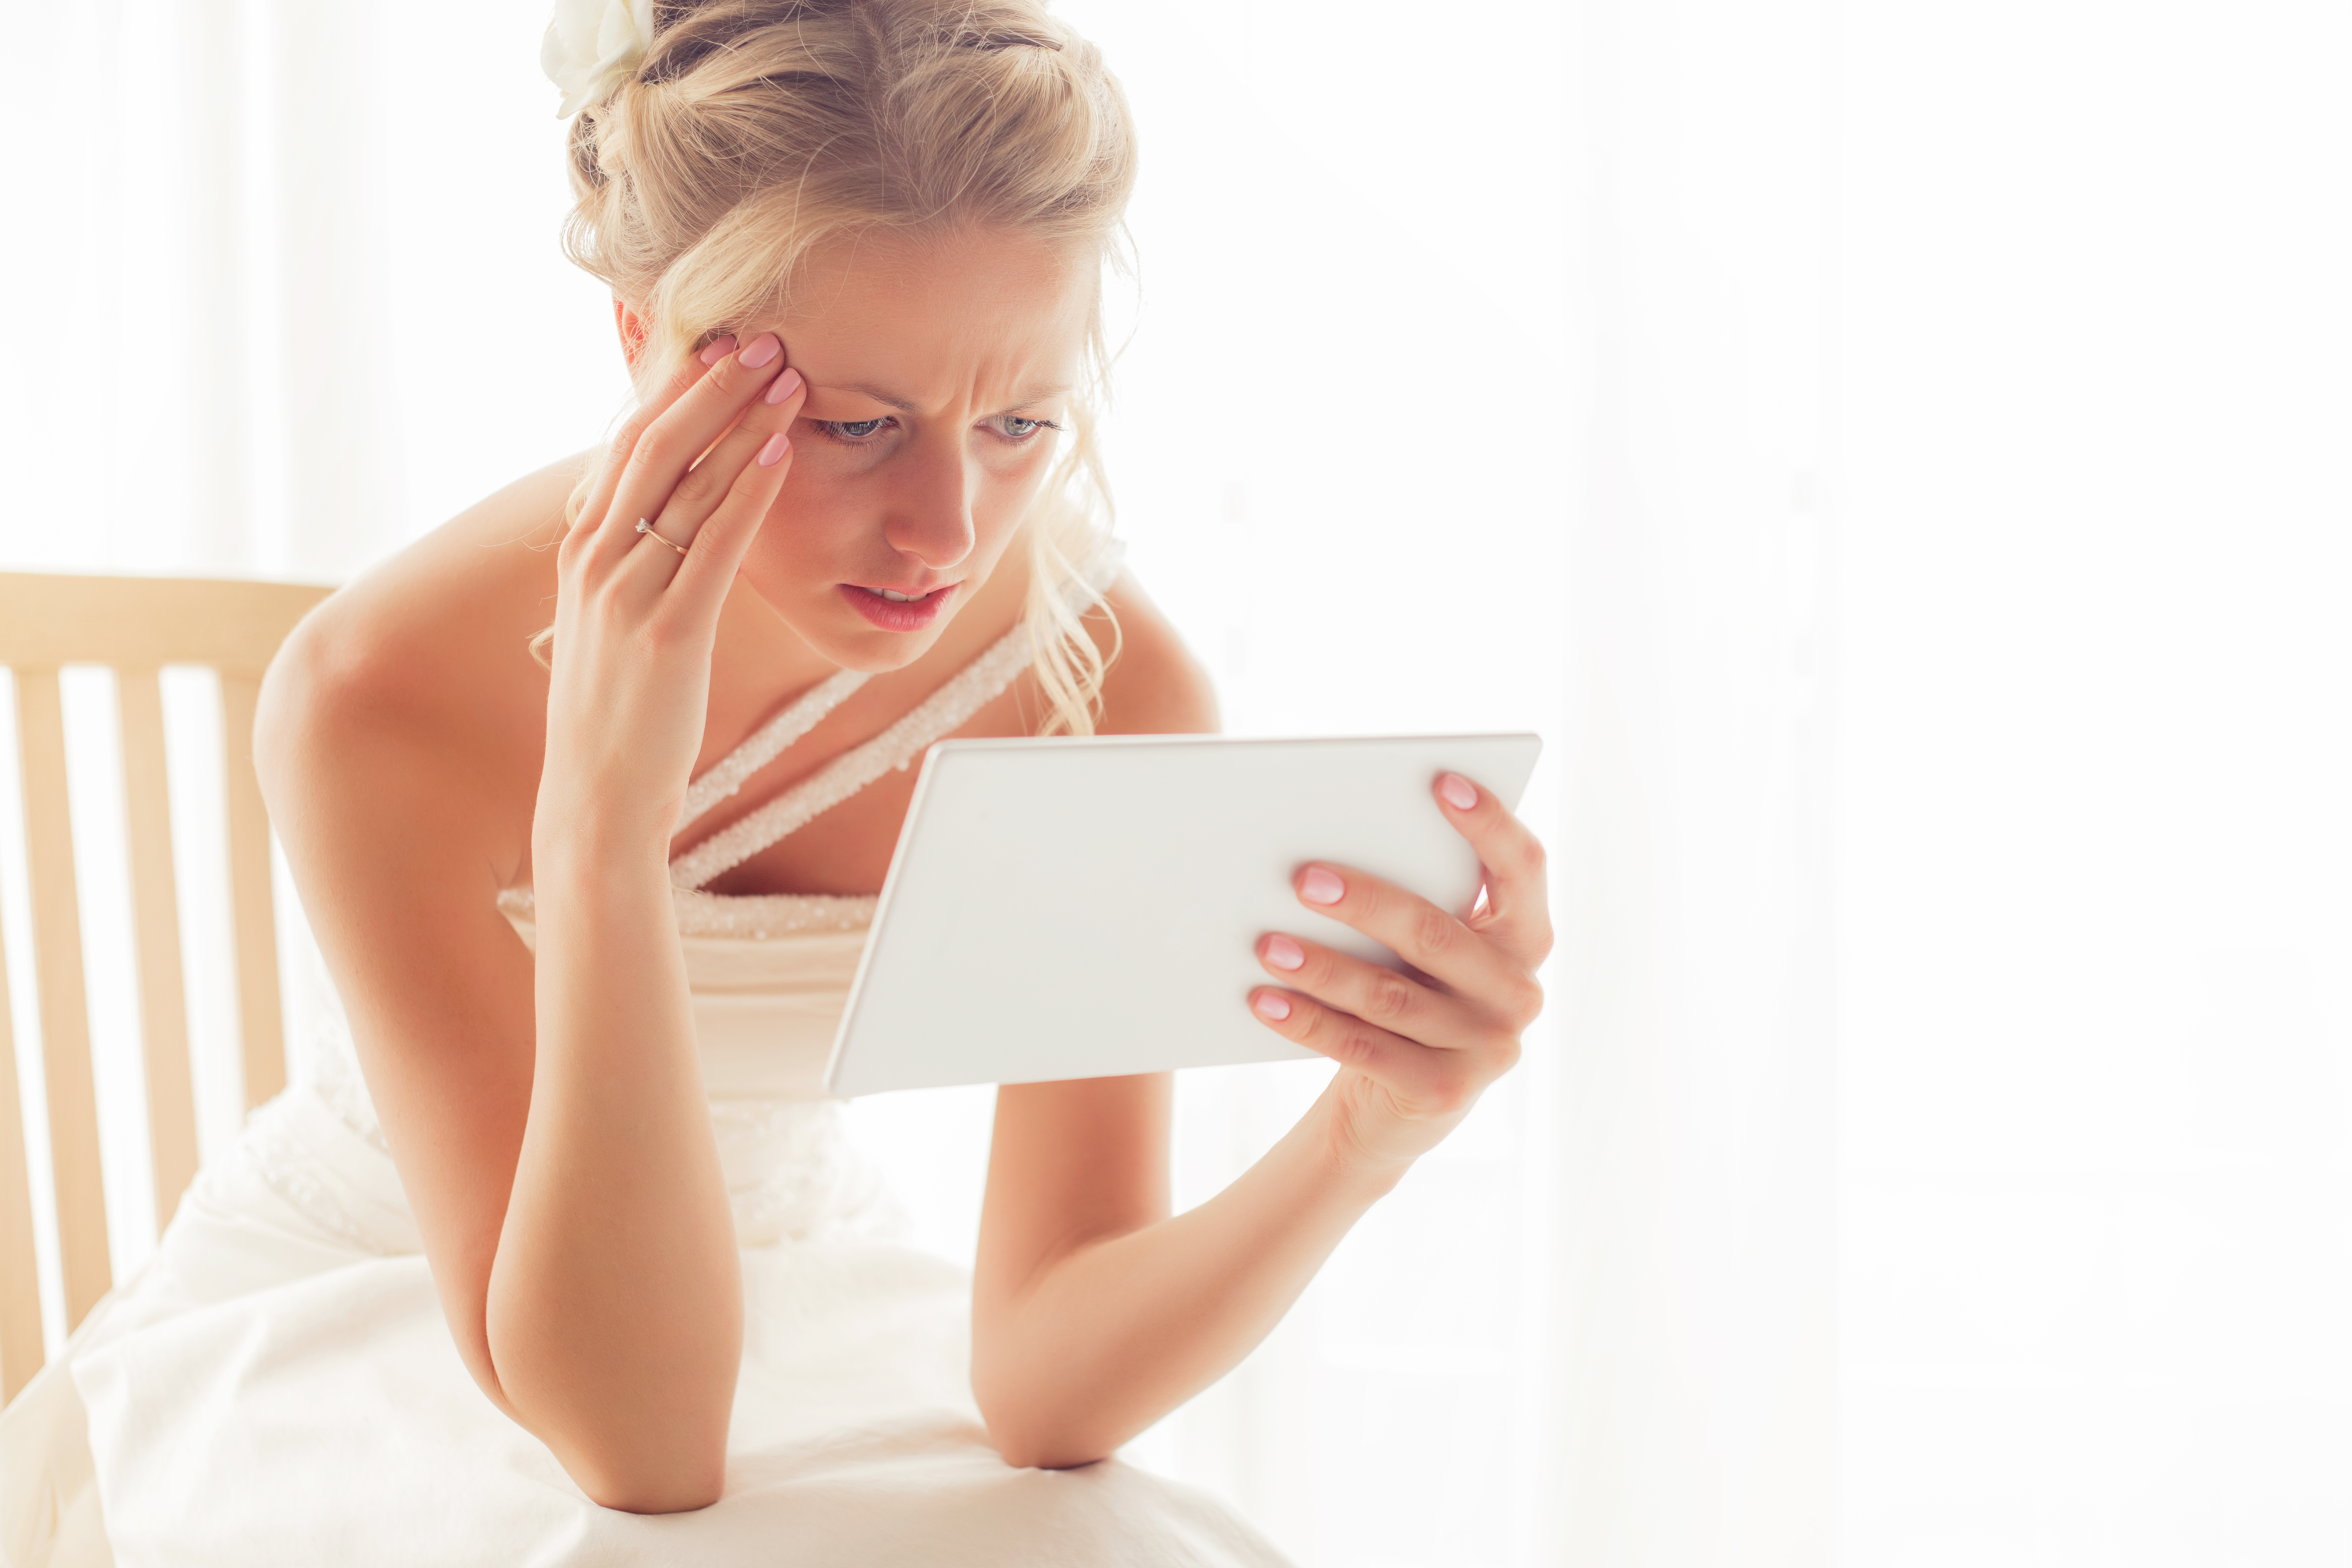 Une mariée inquiète qui regarde une tablette | Source : Shutterstock